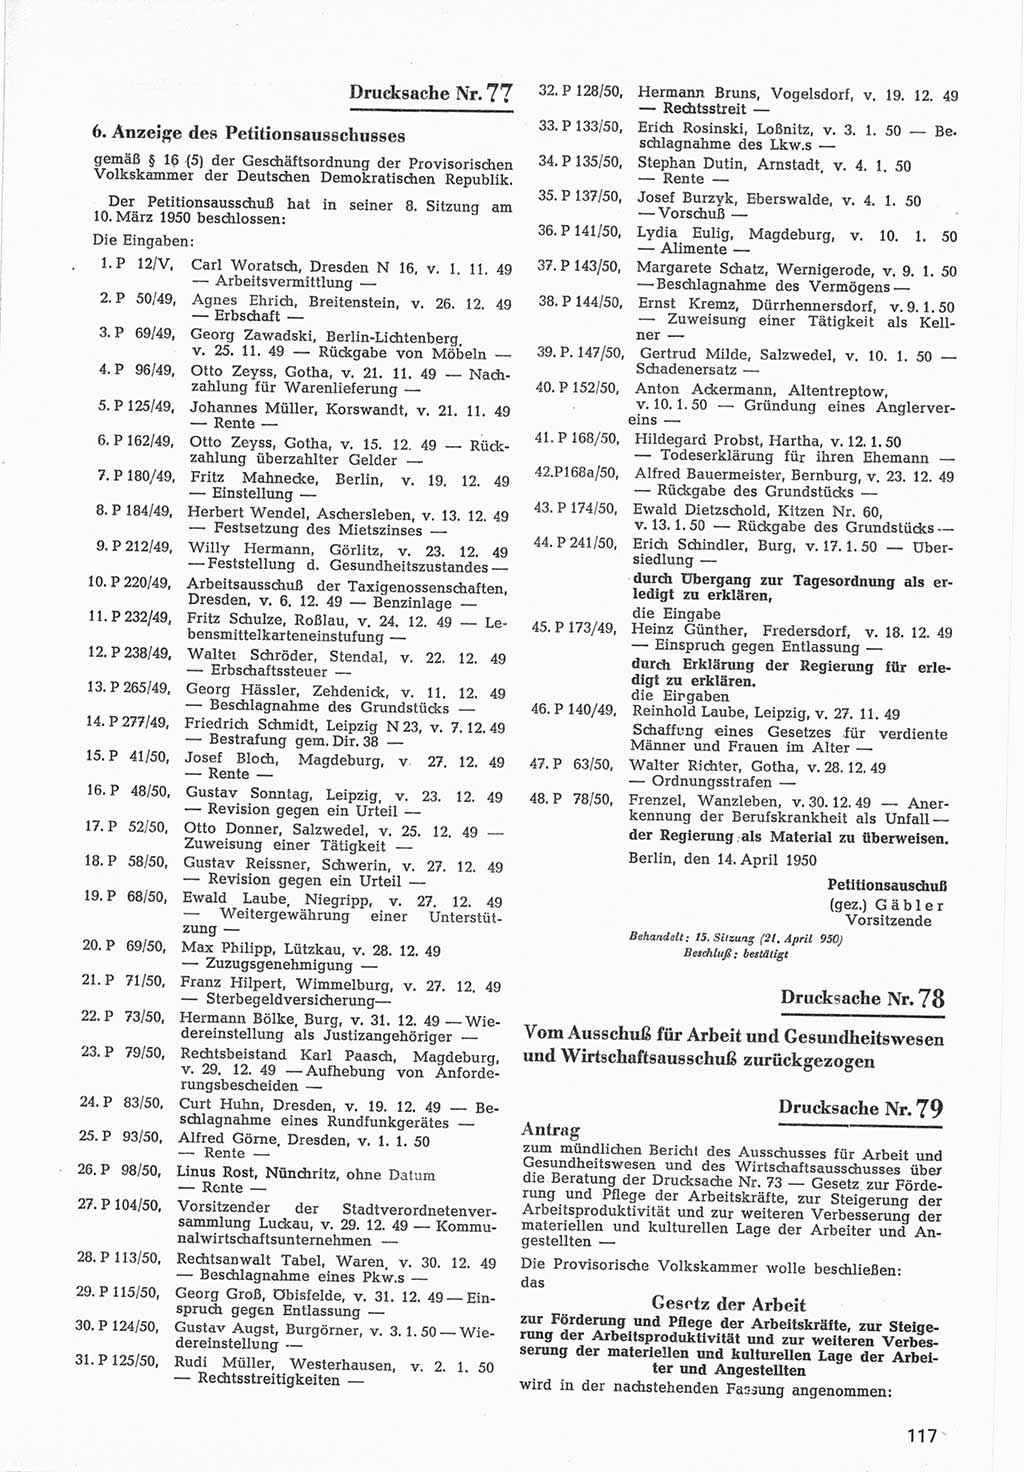 Provisorische Volkskammer (VK) der Deutschen Demokratischen Republik (DDR) 1949-1950, Dokument 719 (Prov. VK DDR 1949-1950, Dok. 719)